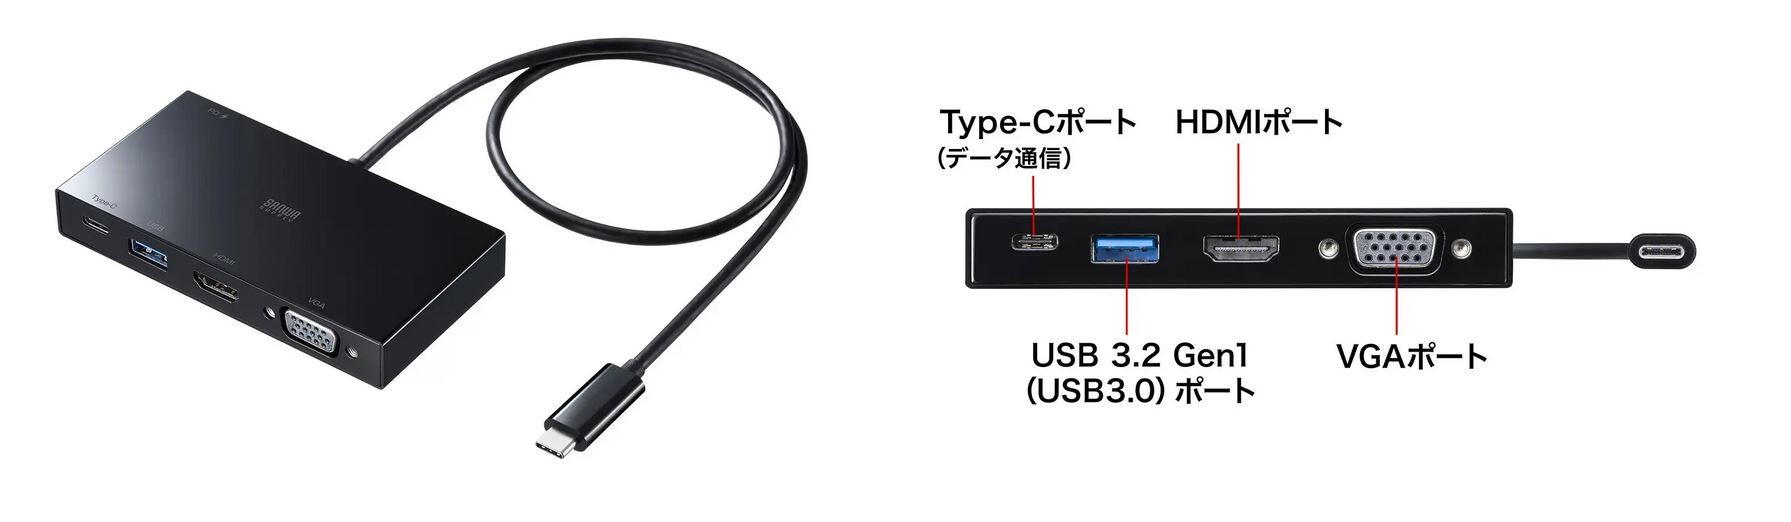 USB Type-Cケーブル1本で、ノートパソコンからVGAやHDMI搭載の外部